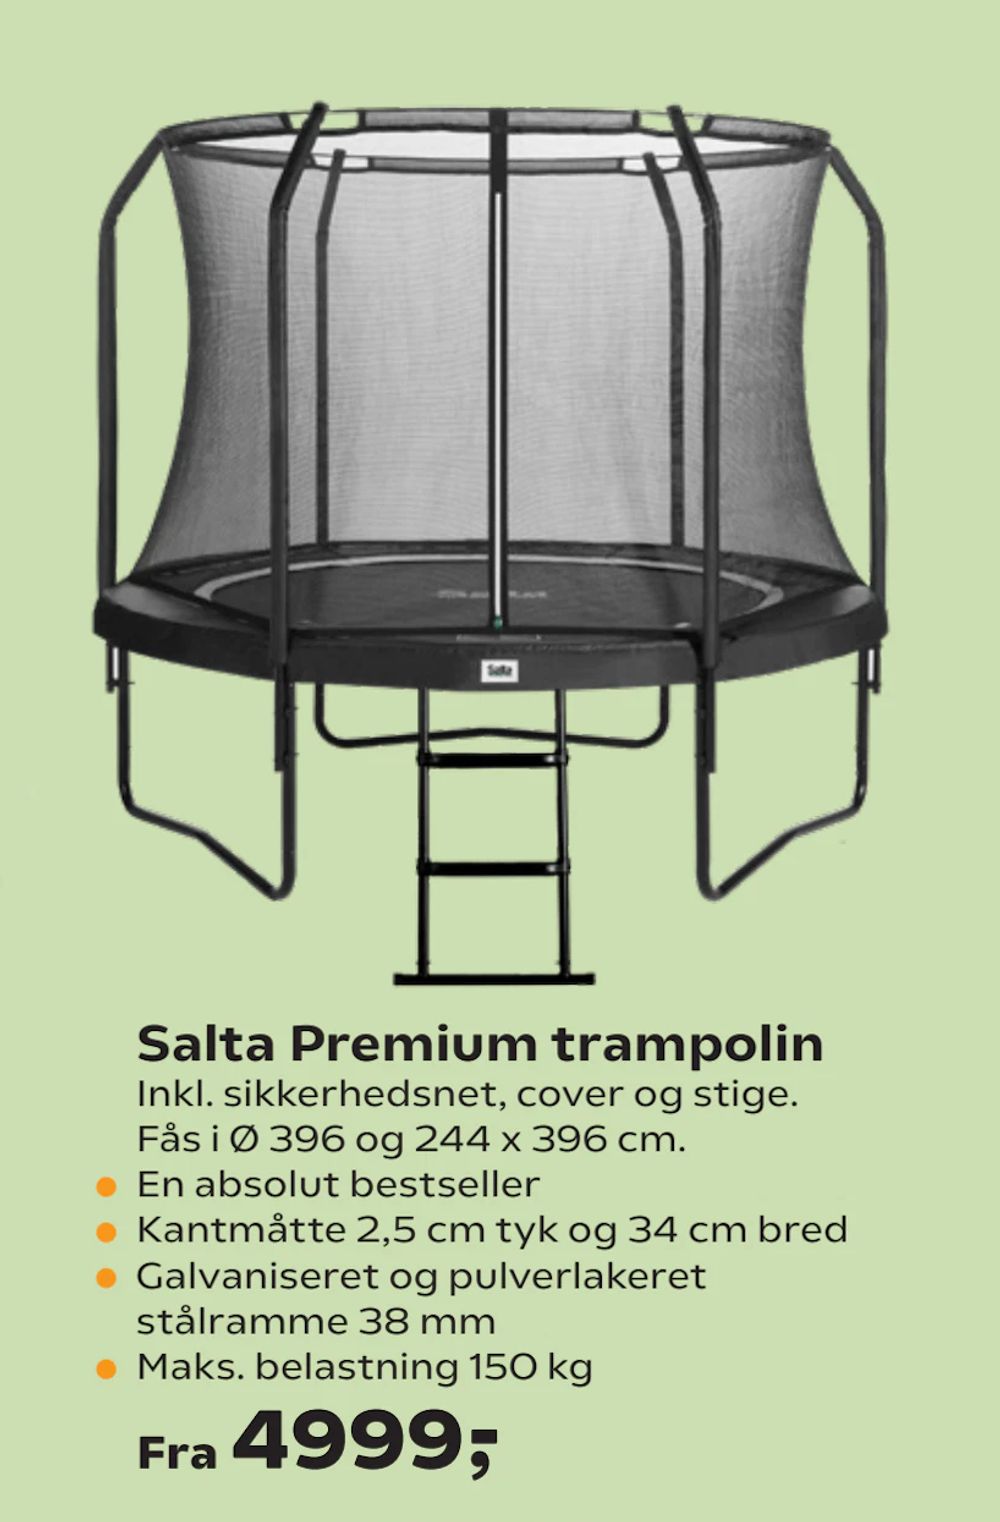 Tilbud på Salta Premium trampolin fra Coop.dk til 4.999 kr.